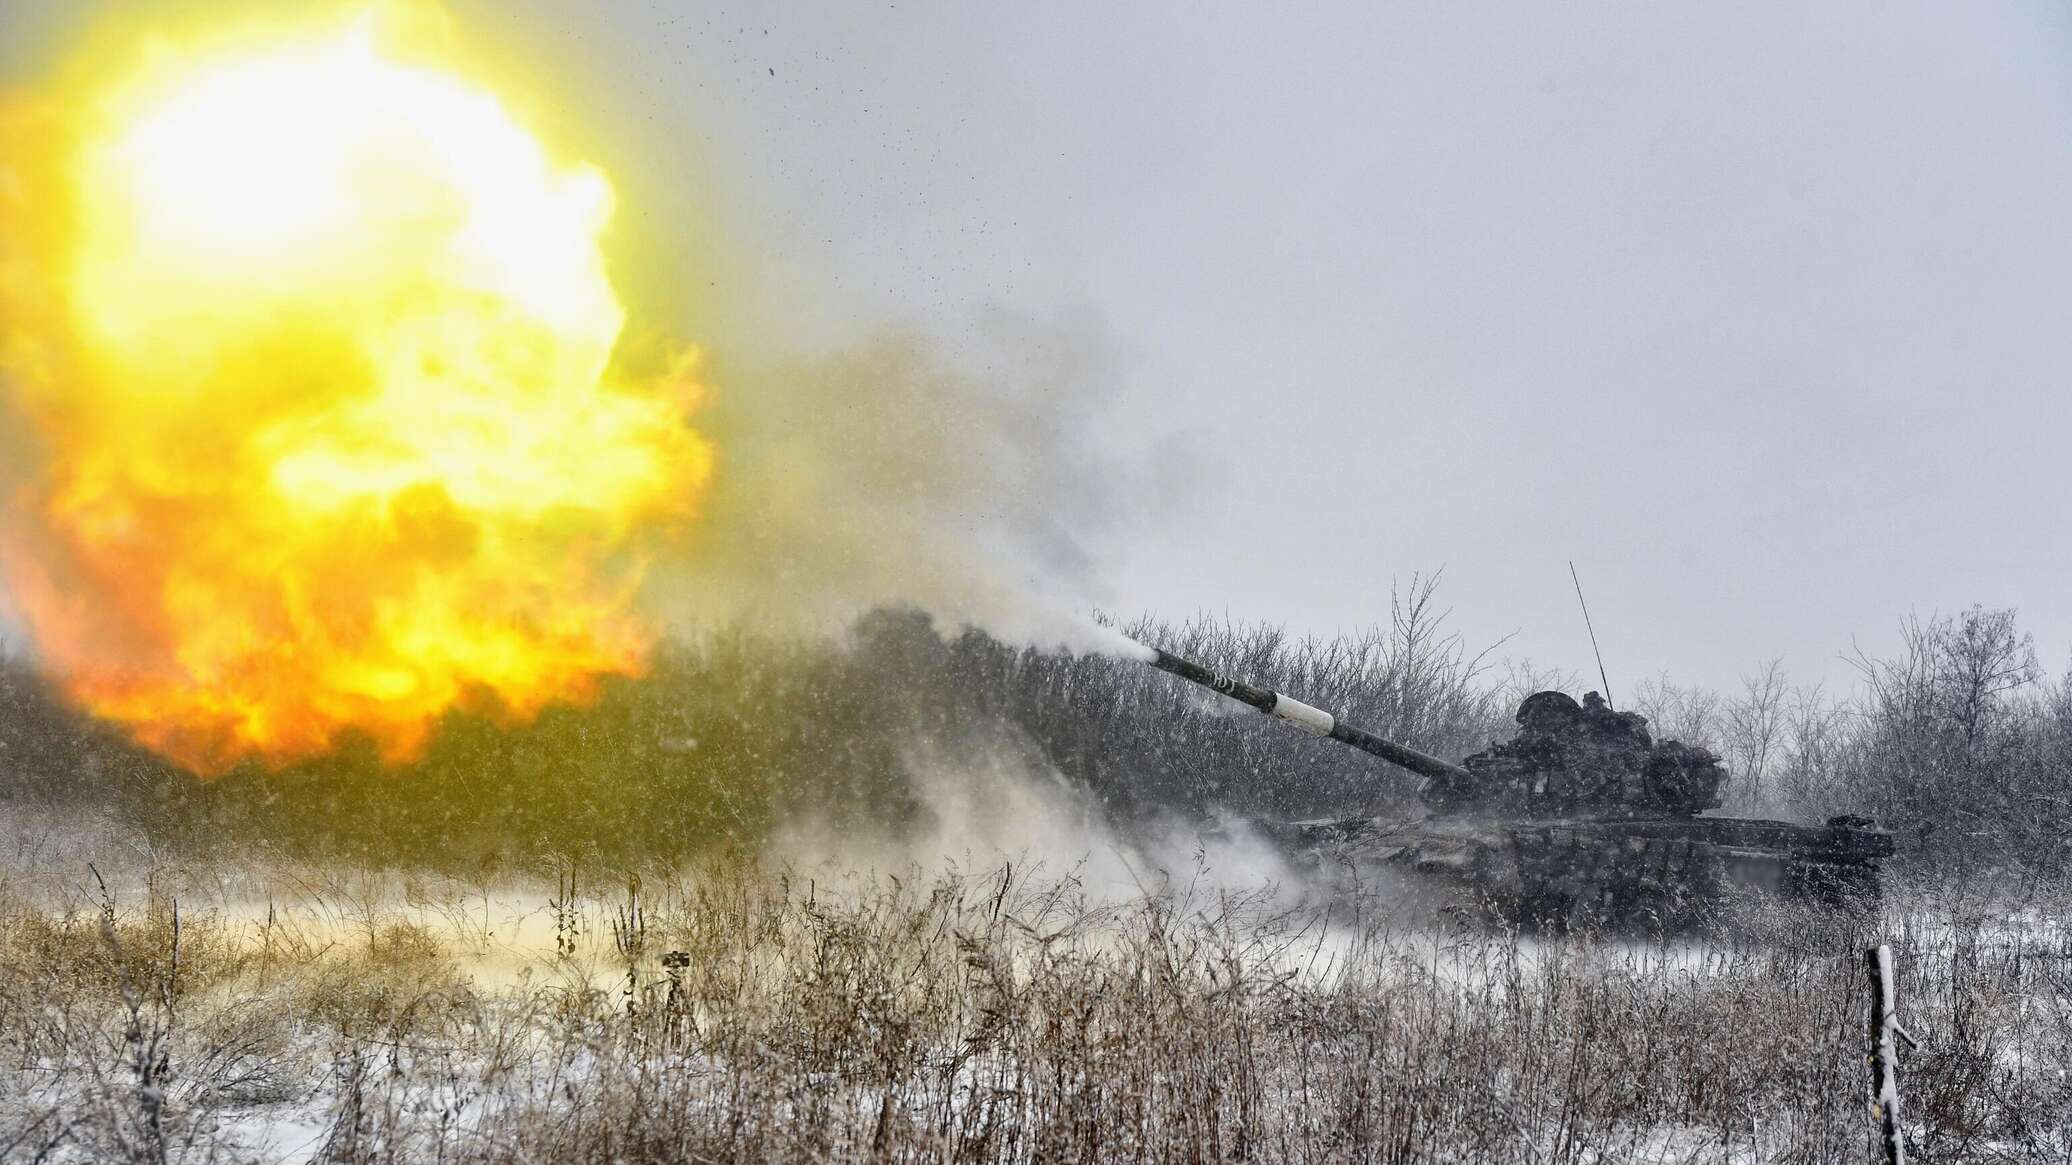 الجيش الروسي يسقط 3 مقاتلات أوكرانية من طراز "سو-25"